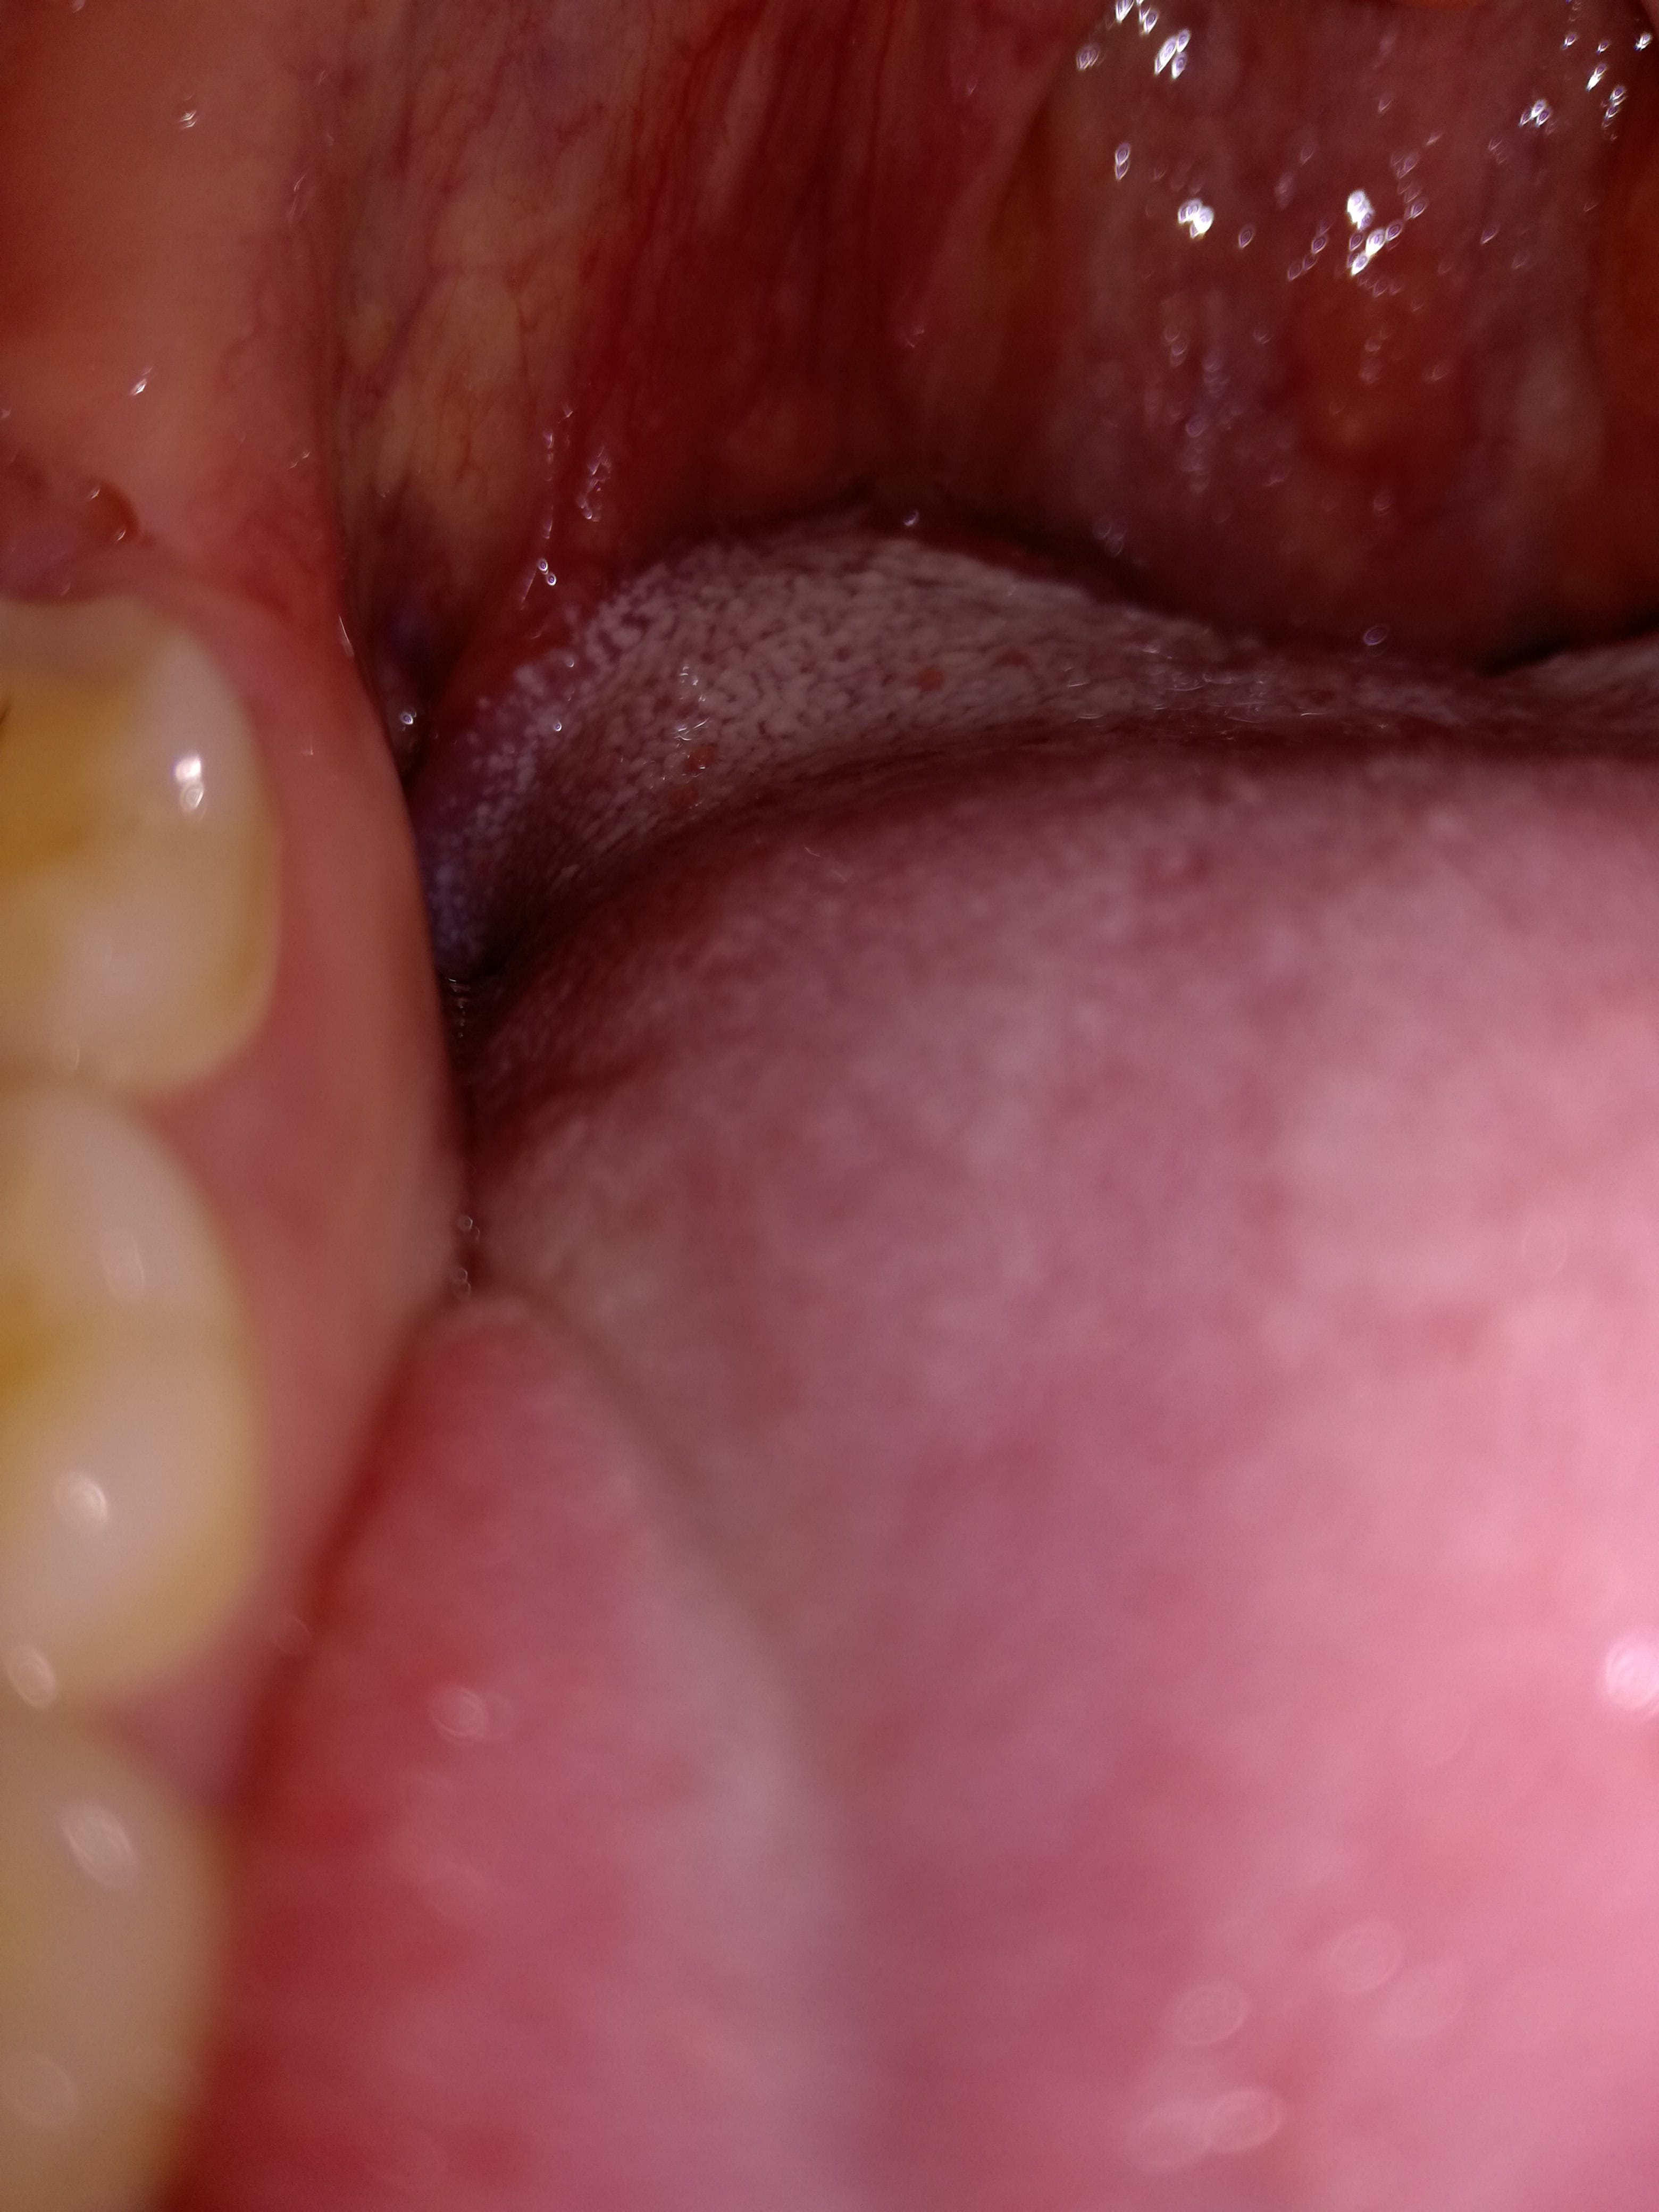 Placa blanca en garganta y final lengua duradera - Otorrinolaringología